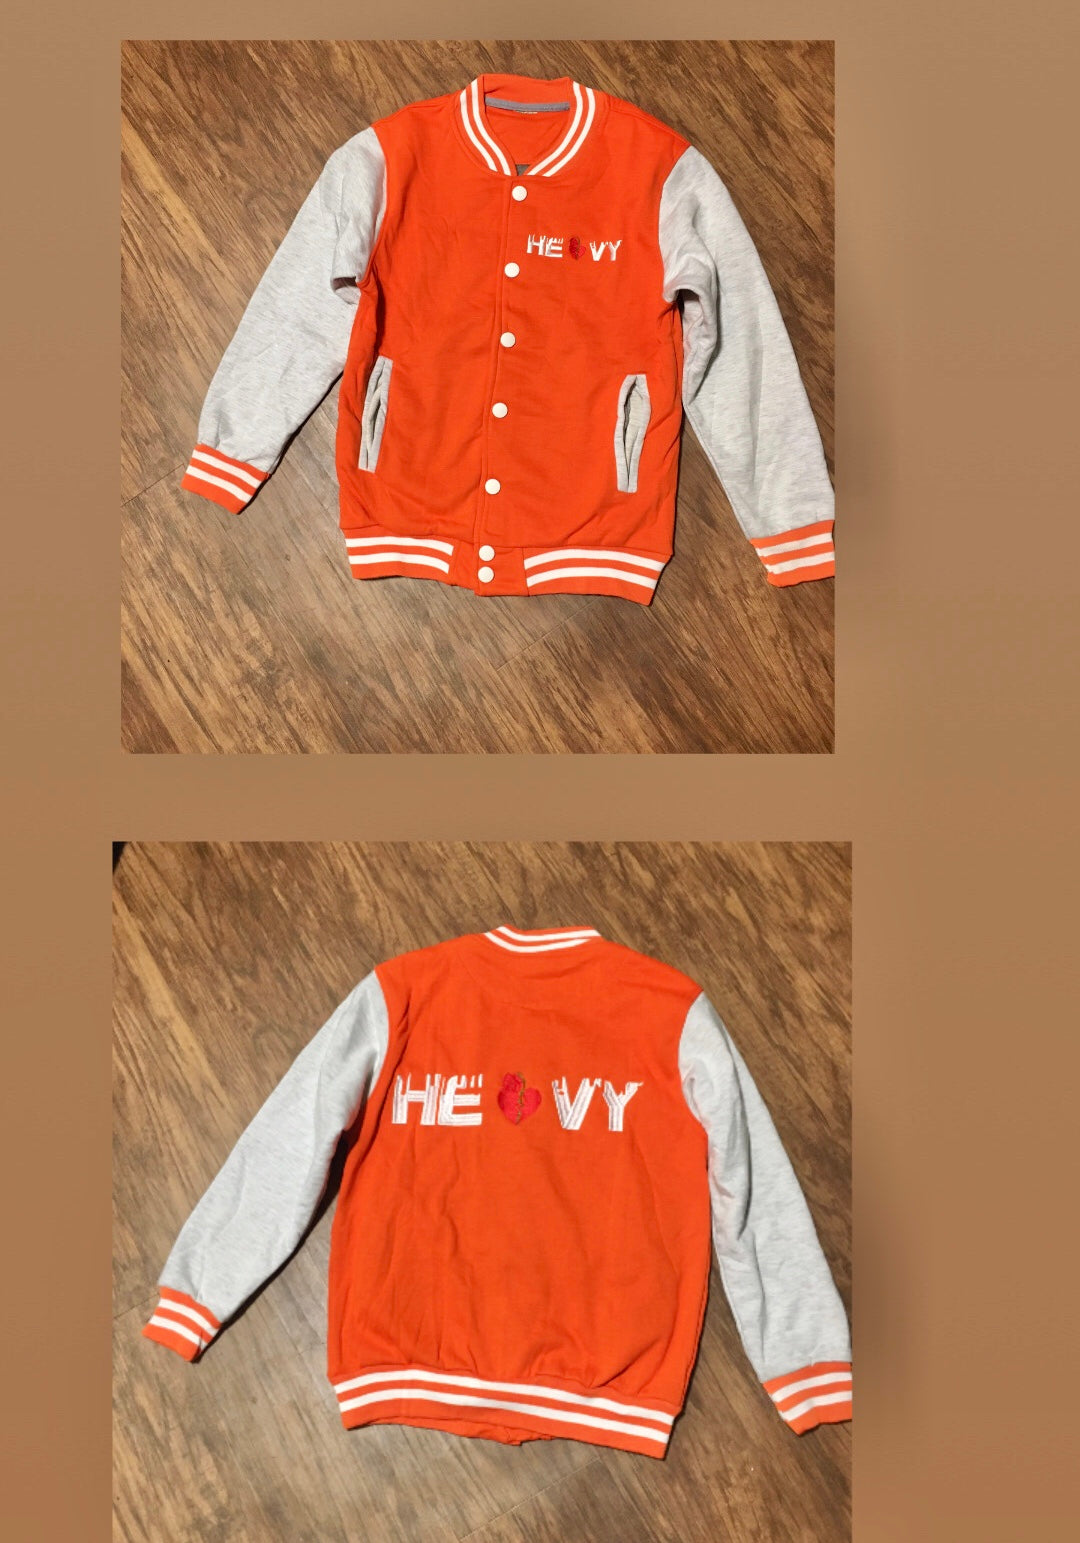 Heavy “Classic” Varsity jacket